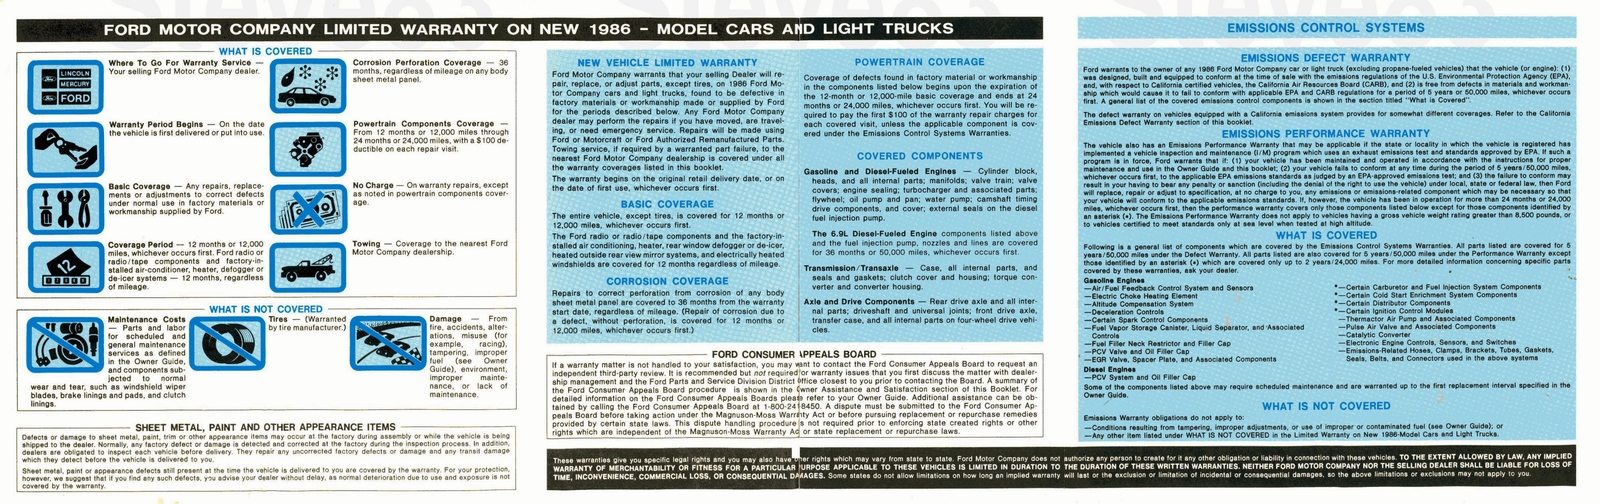 n_1986 Ford Light Truck Warranty Guide-02.jpg